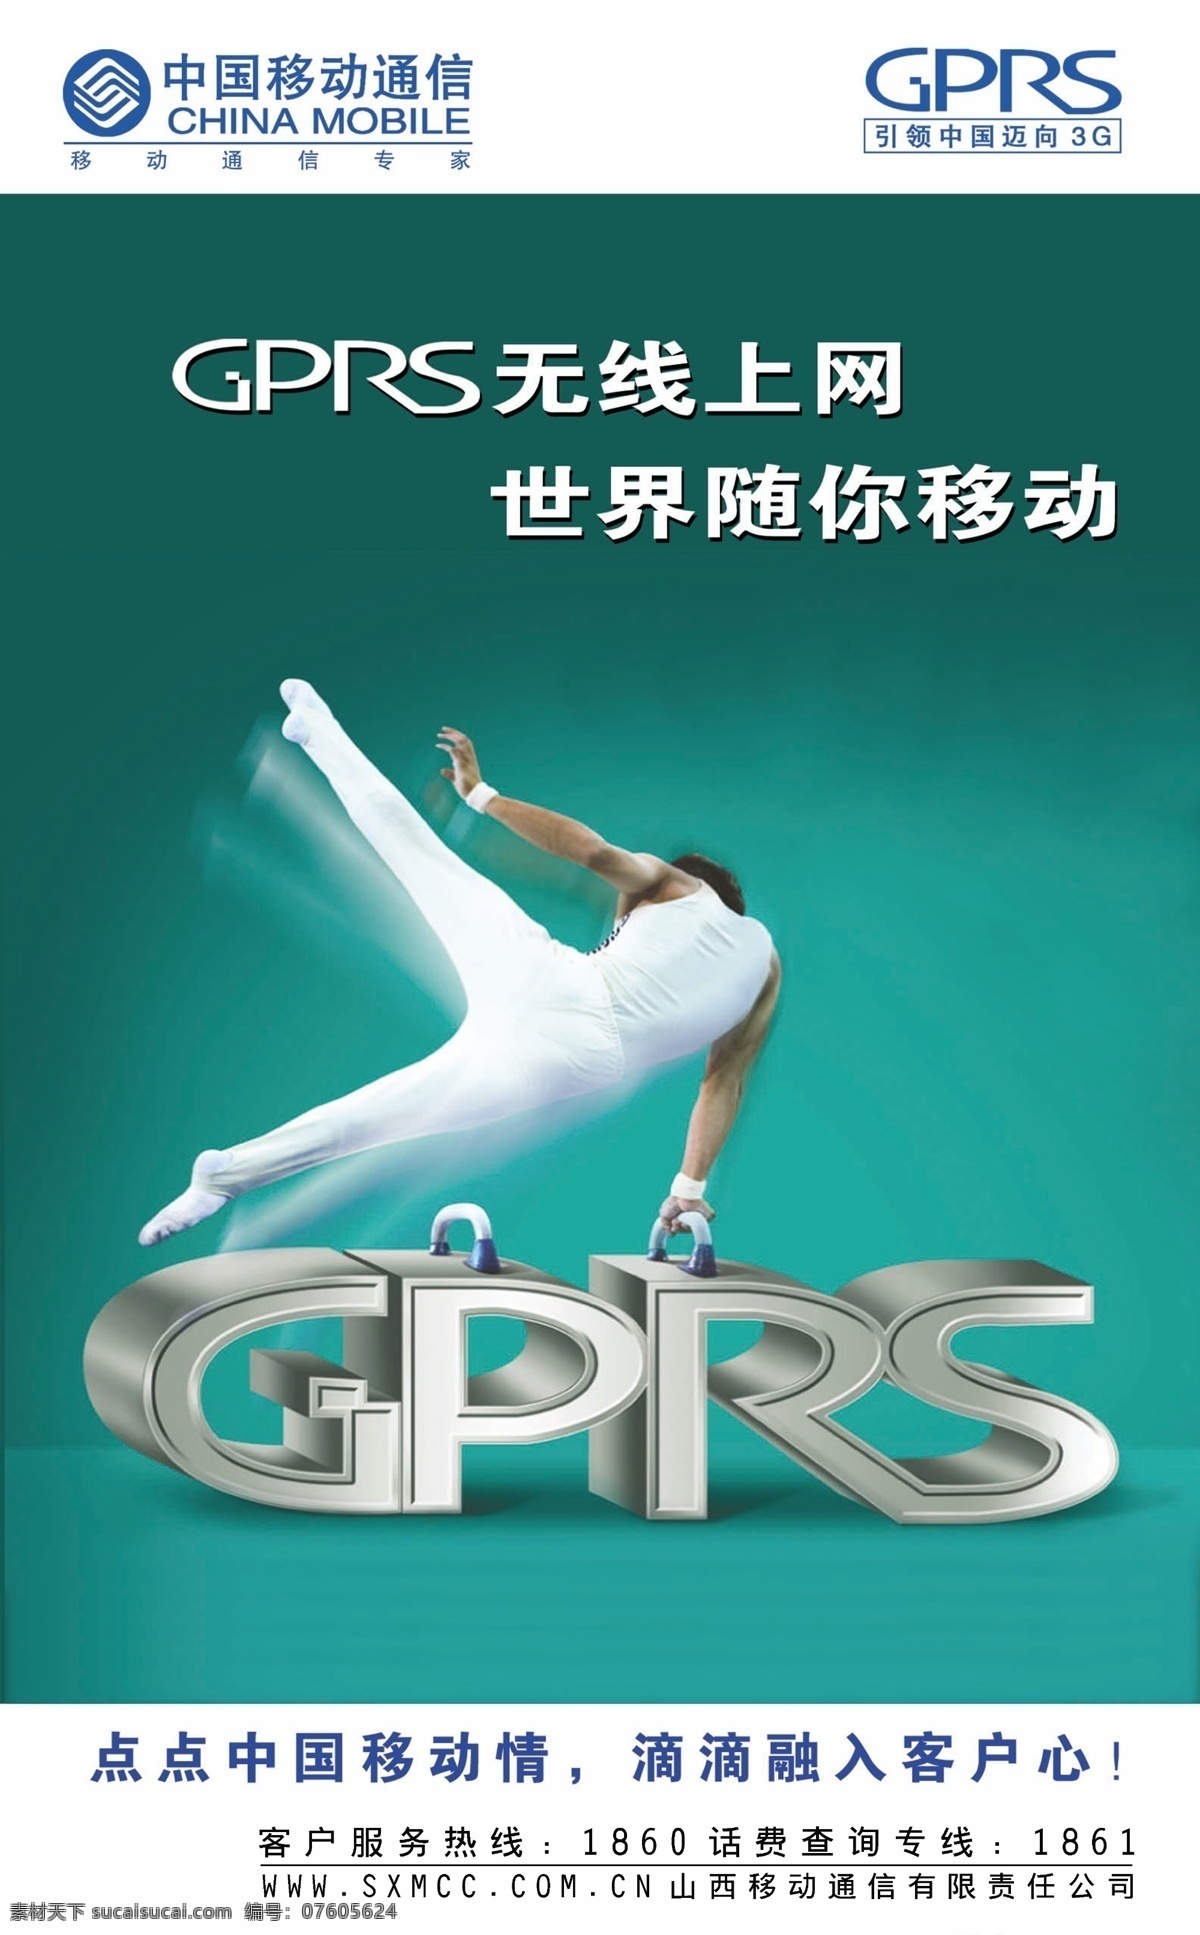 移动gprs 中国移动 gprs 体操 移动上网 点 点中 国 移动 情 滴滴 融入 客户 心 展板模板 广告设计模板 源文件 绿色